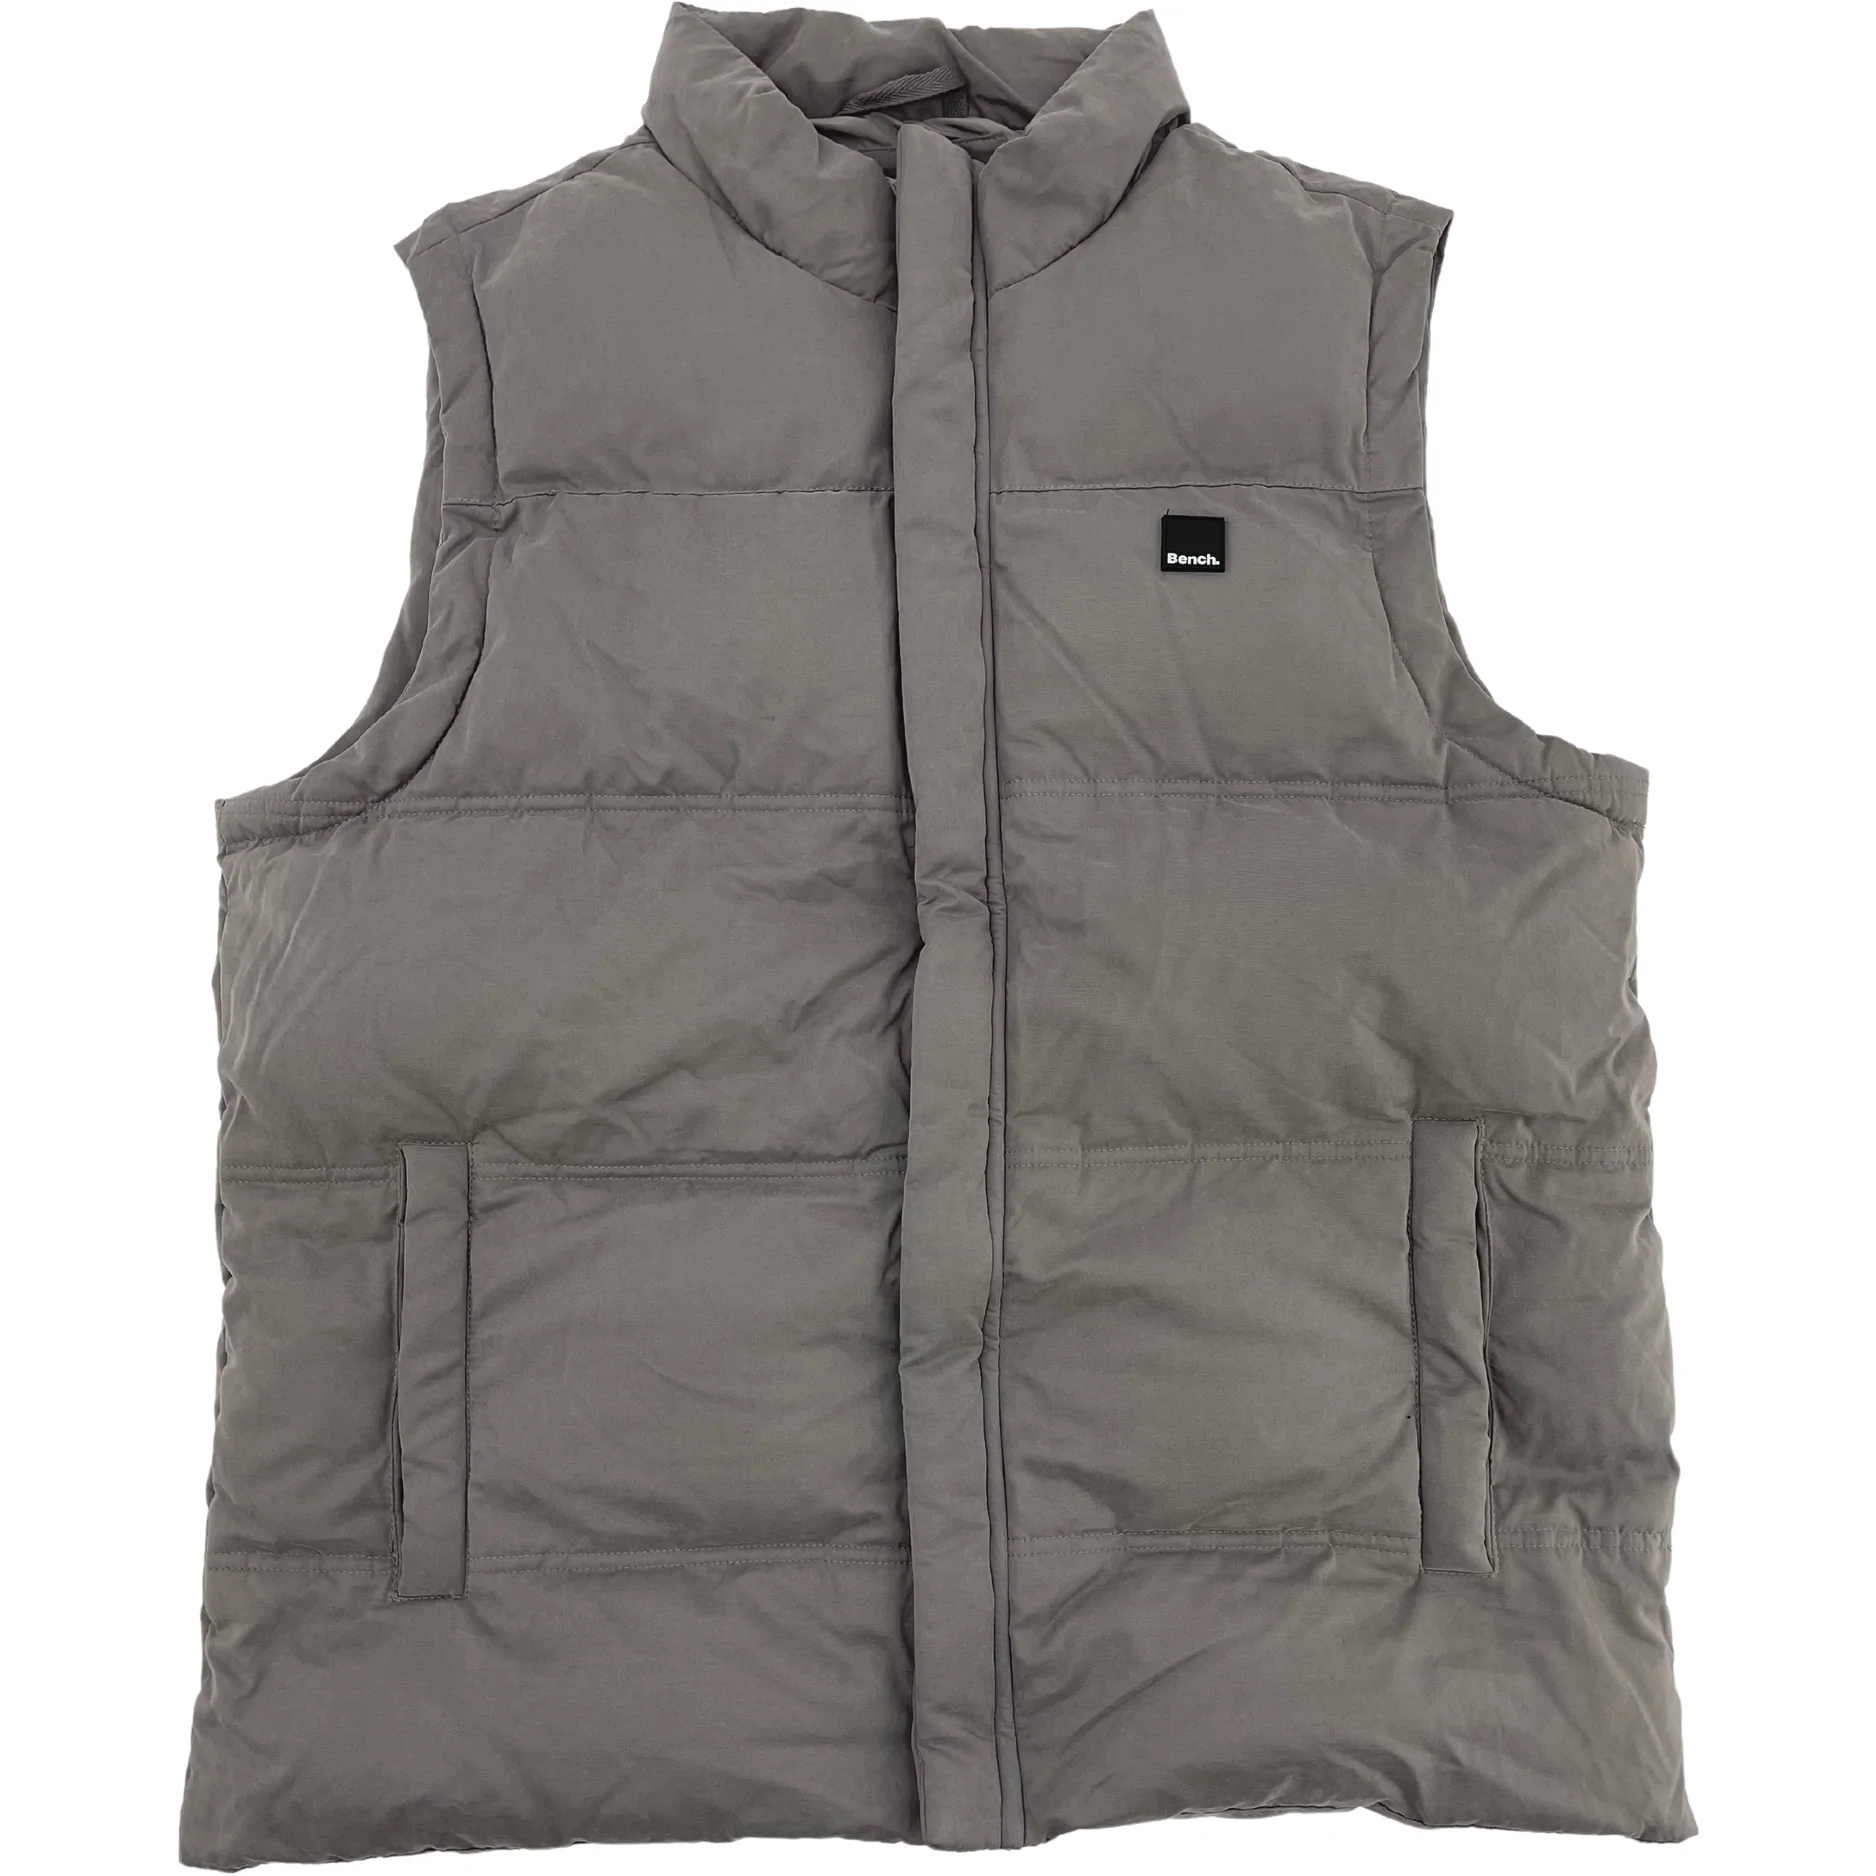 Bench Men's Vest / Zip Up / Insulated Vest / Grey / Size M